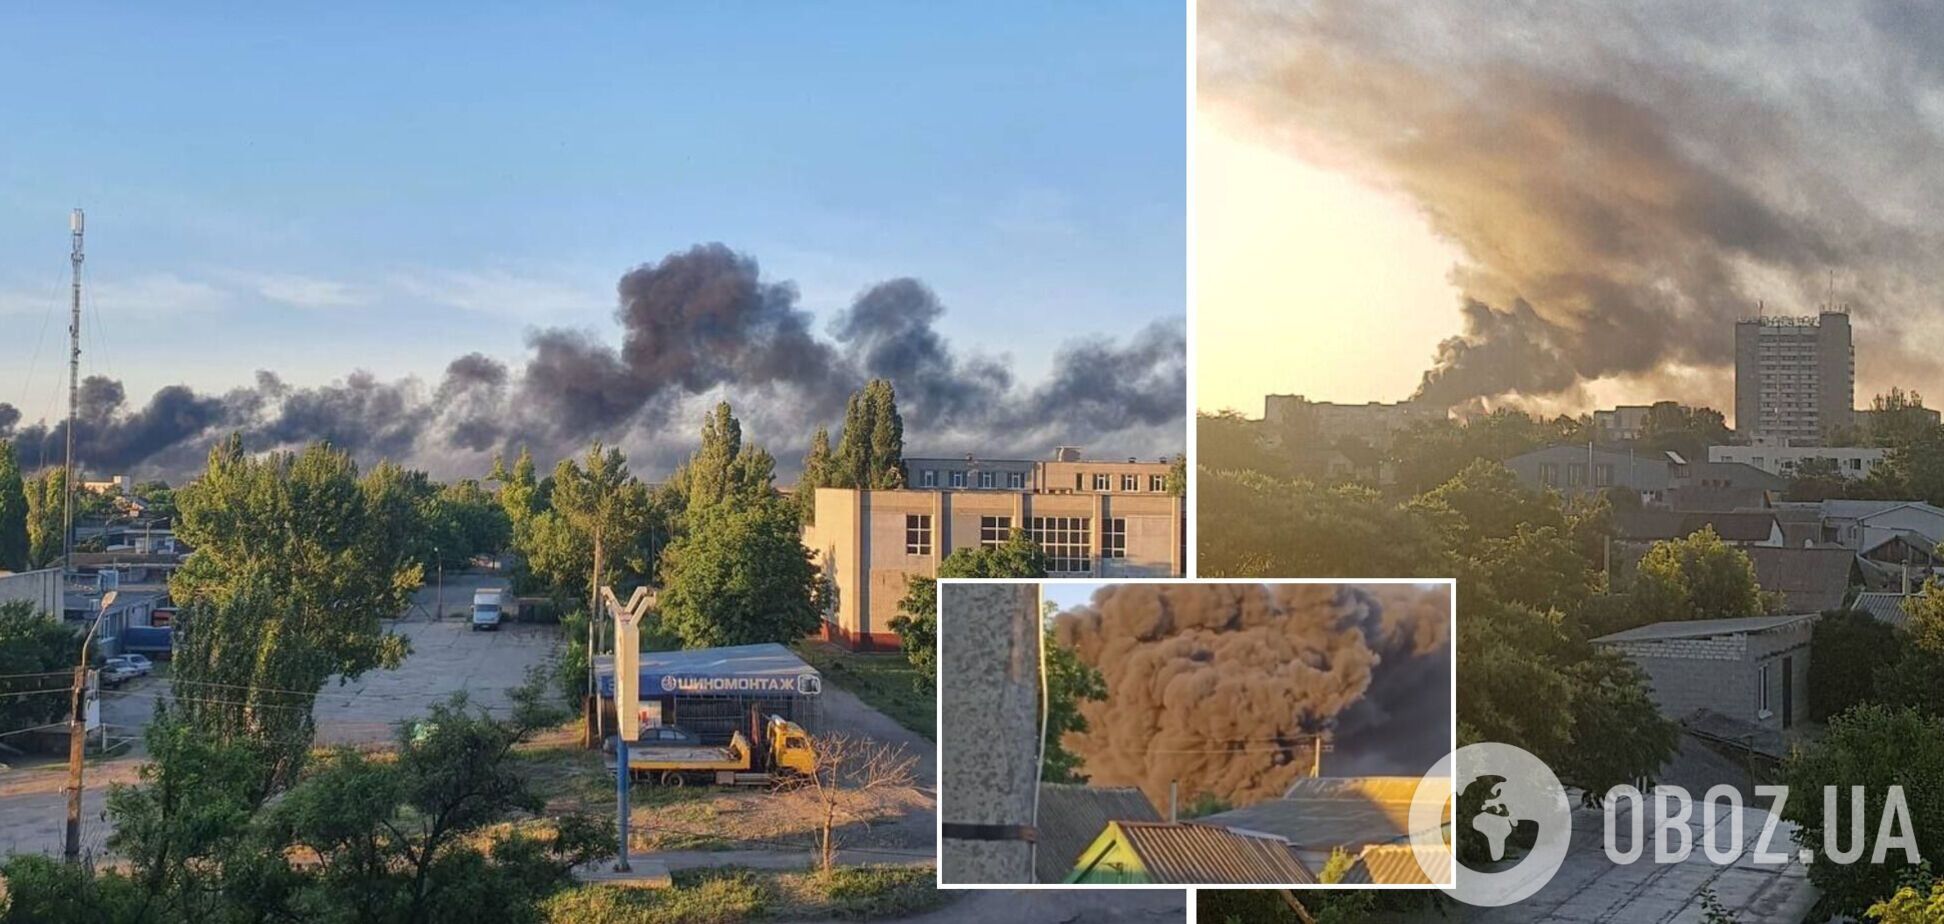 Во временно оккупированном Бердянске прогремели взрывы: город в дыму. Видео